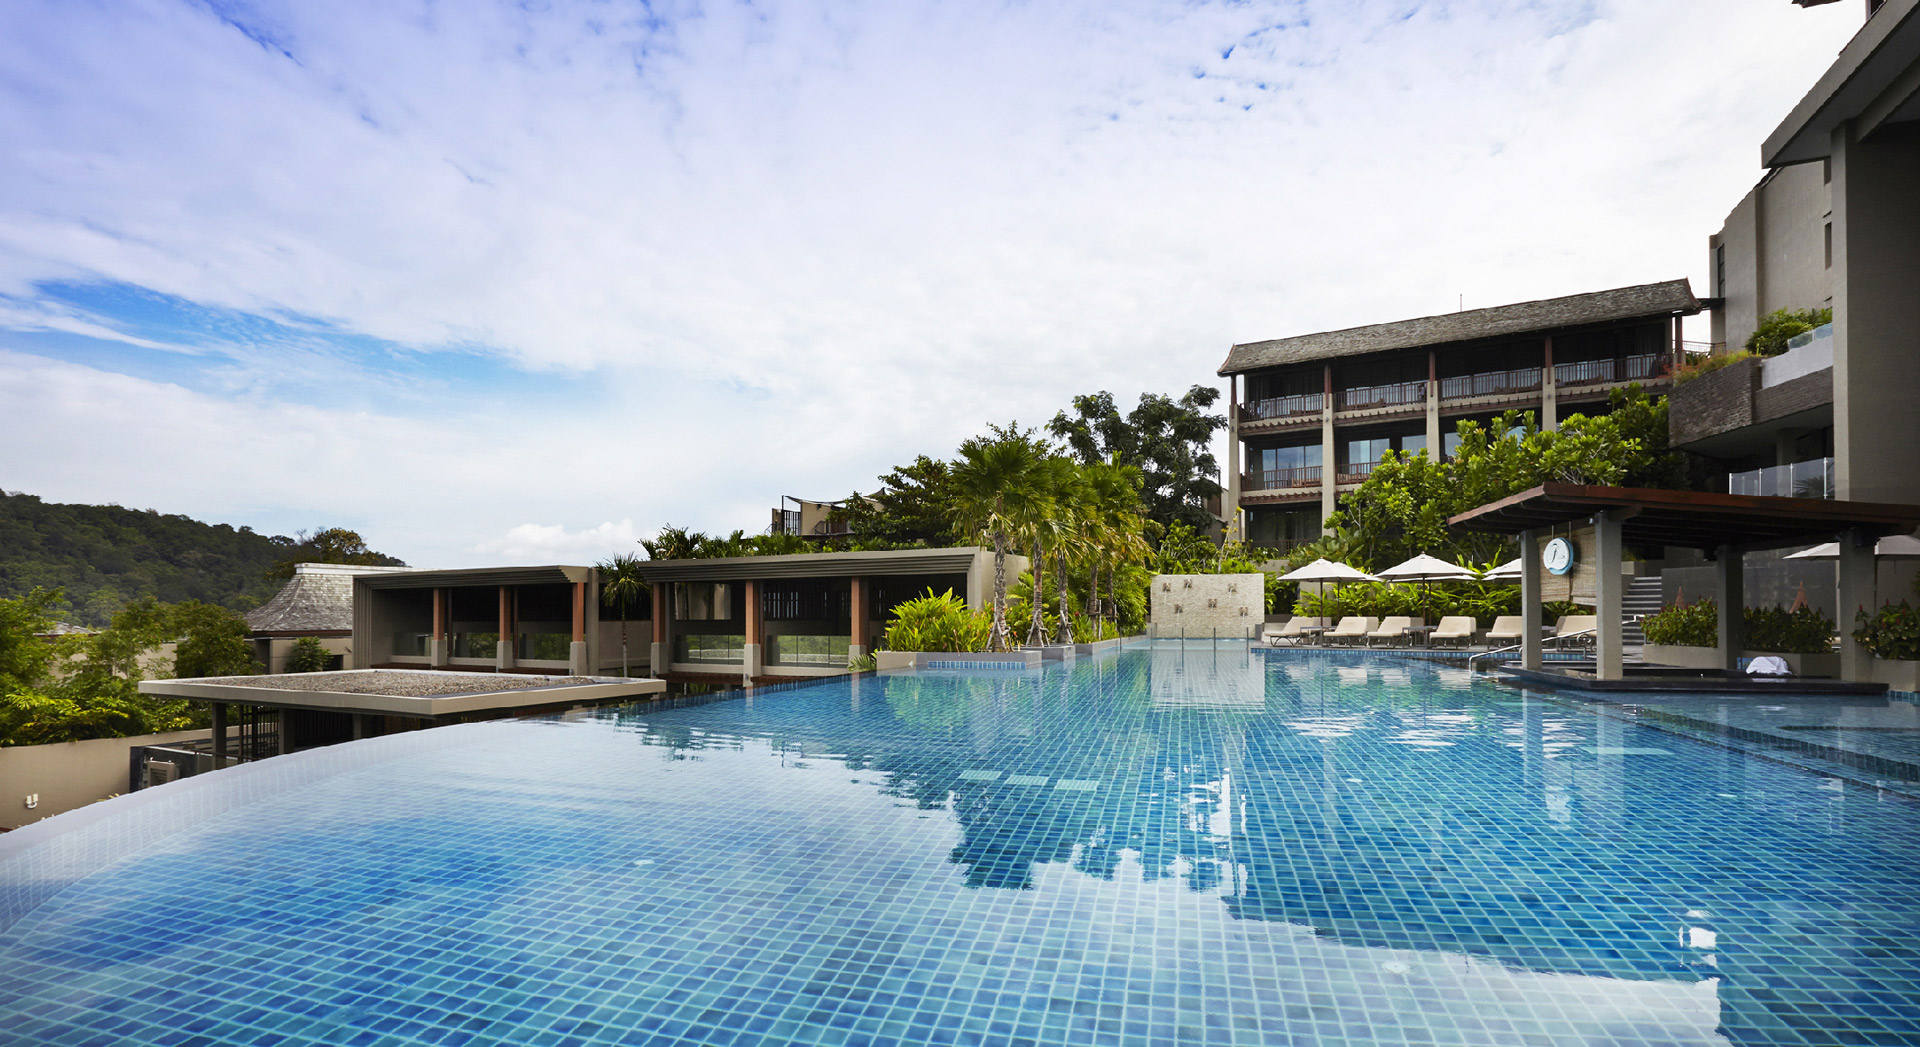 Swimming Pool in Phuket